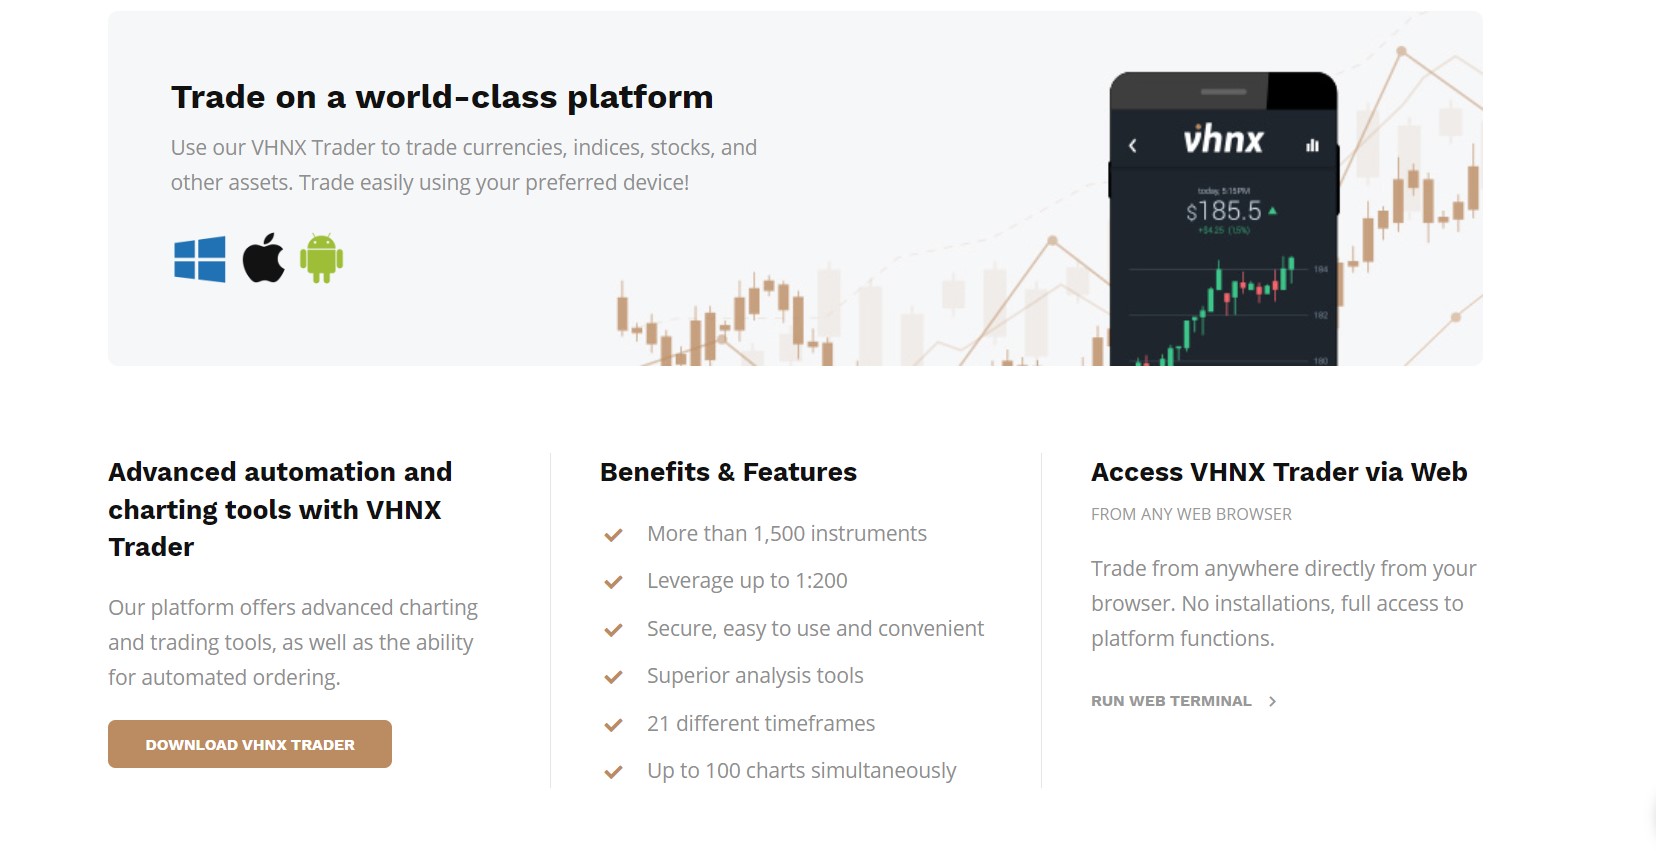 VHNX provides a VHNX Trader, WebTrader and Trading Apps platform.